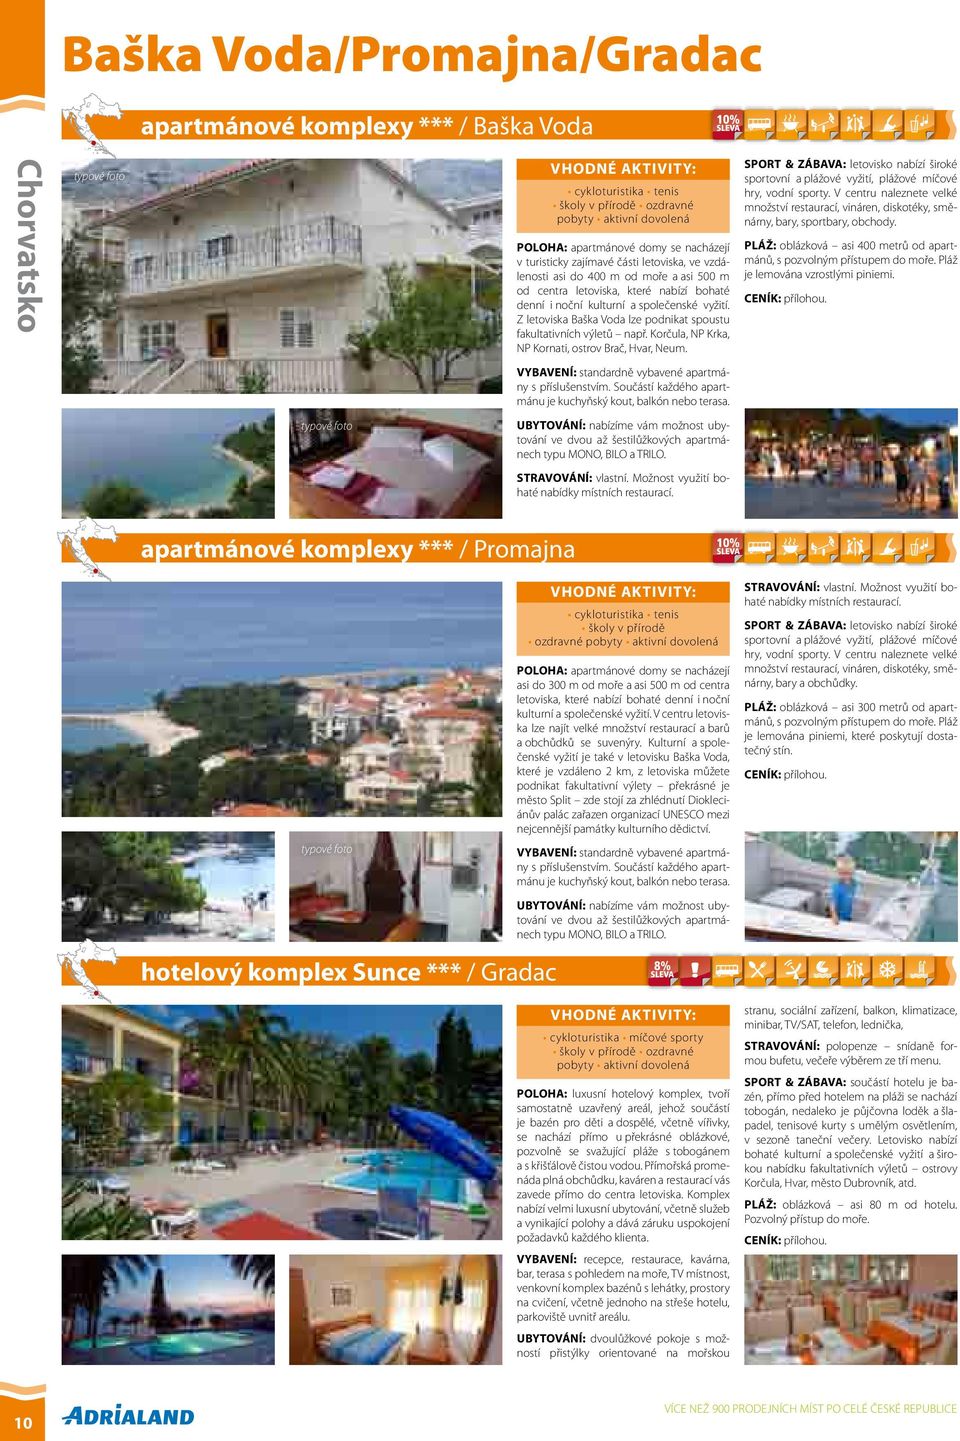 Z letoviska Baška Voda lze podnikat spoustu fakultativních výletů např. Korčula, NP Krka, NP Kornati, ostrov Brač, Hvar, Neum.